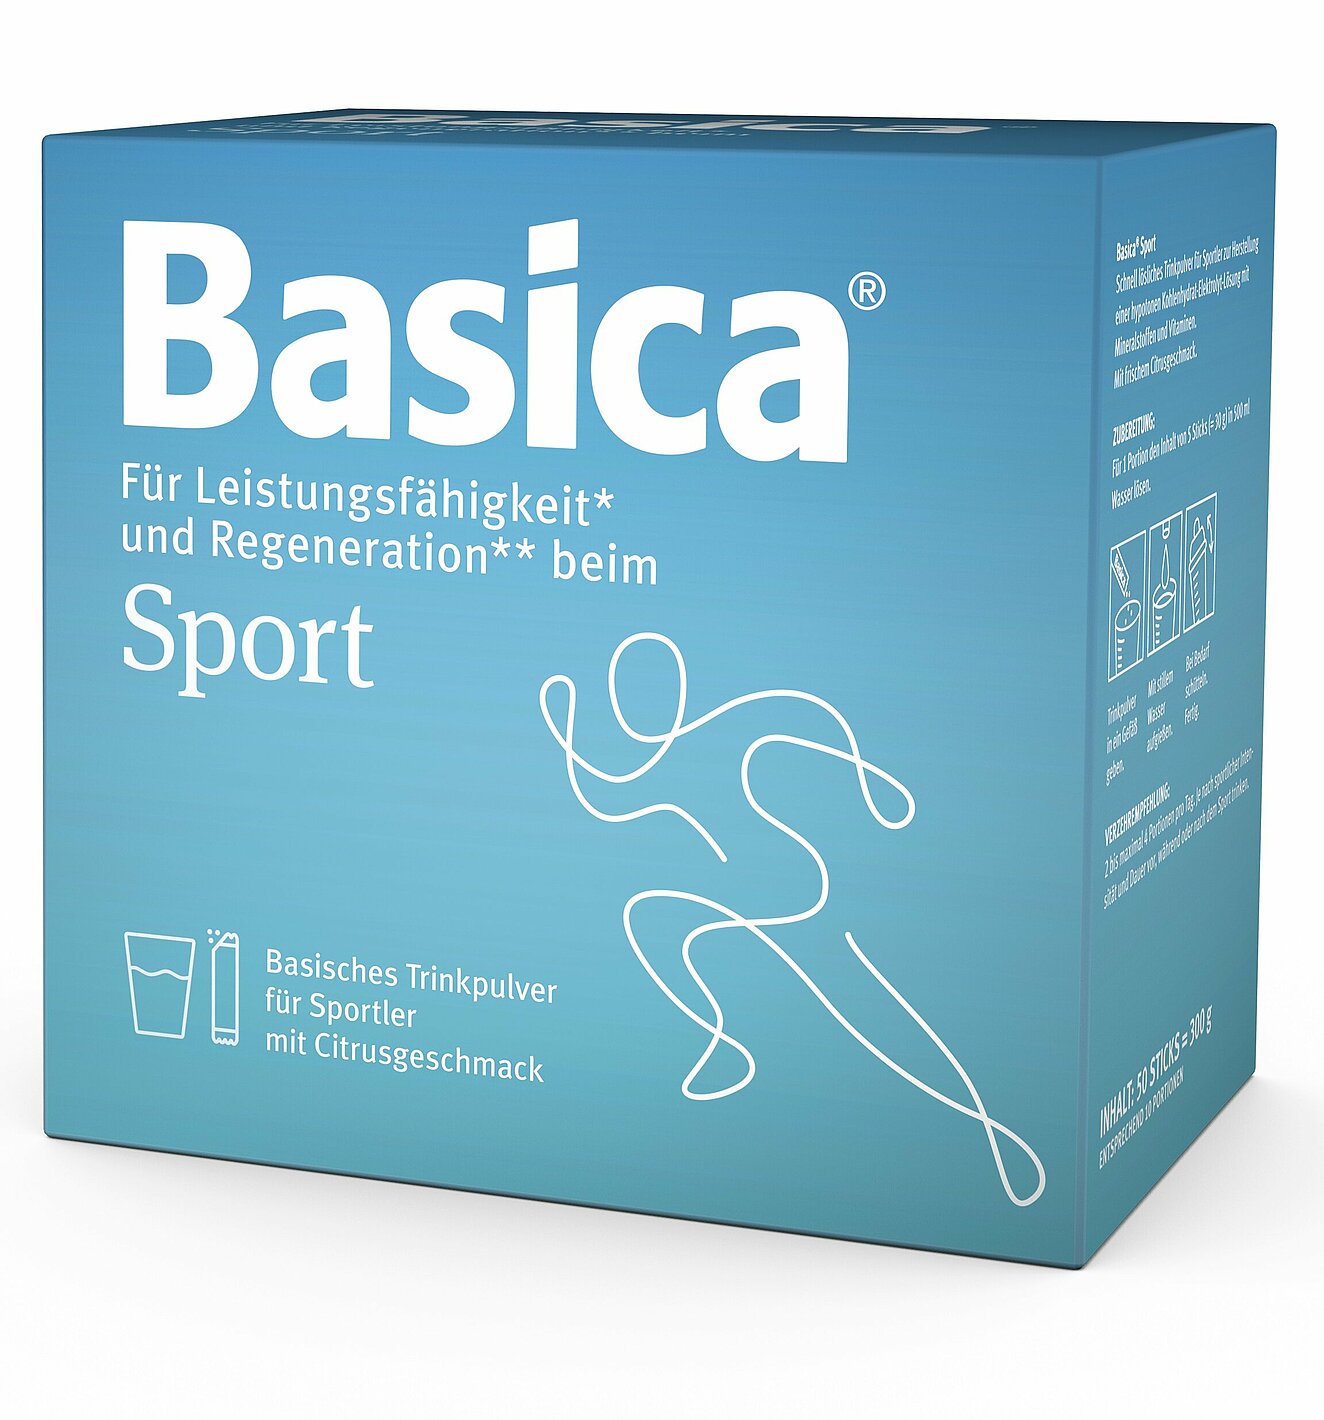 Produktbild Basica Sport